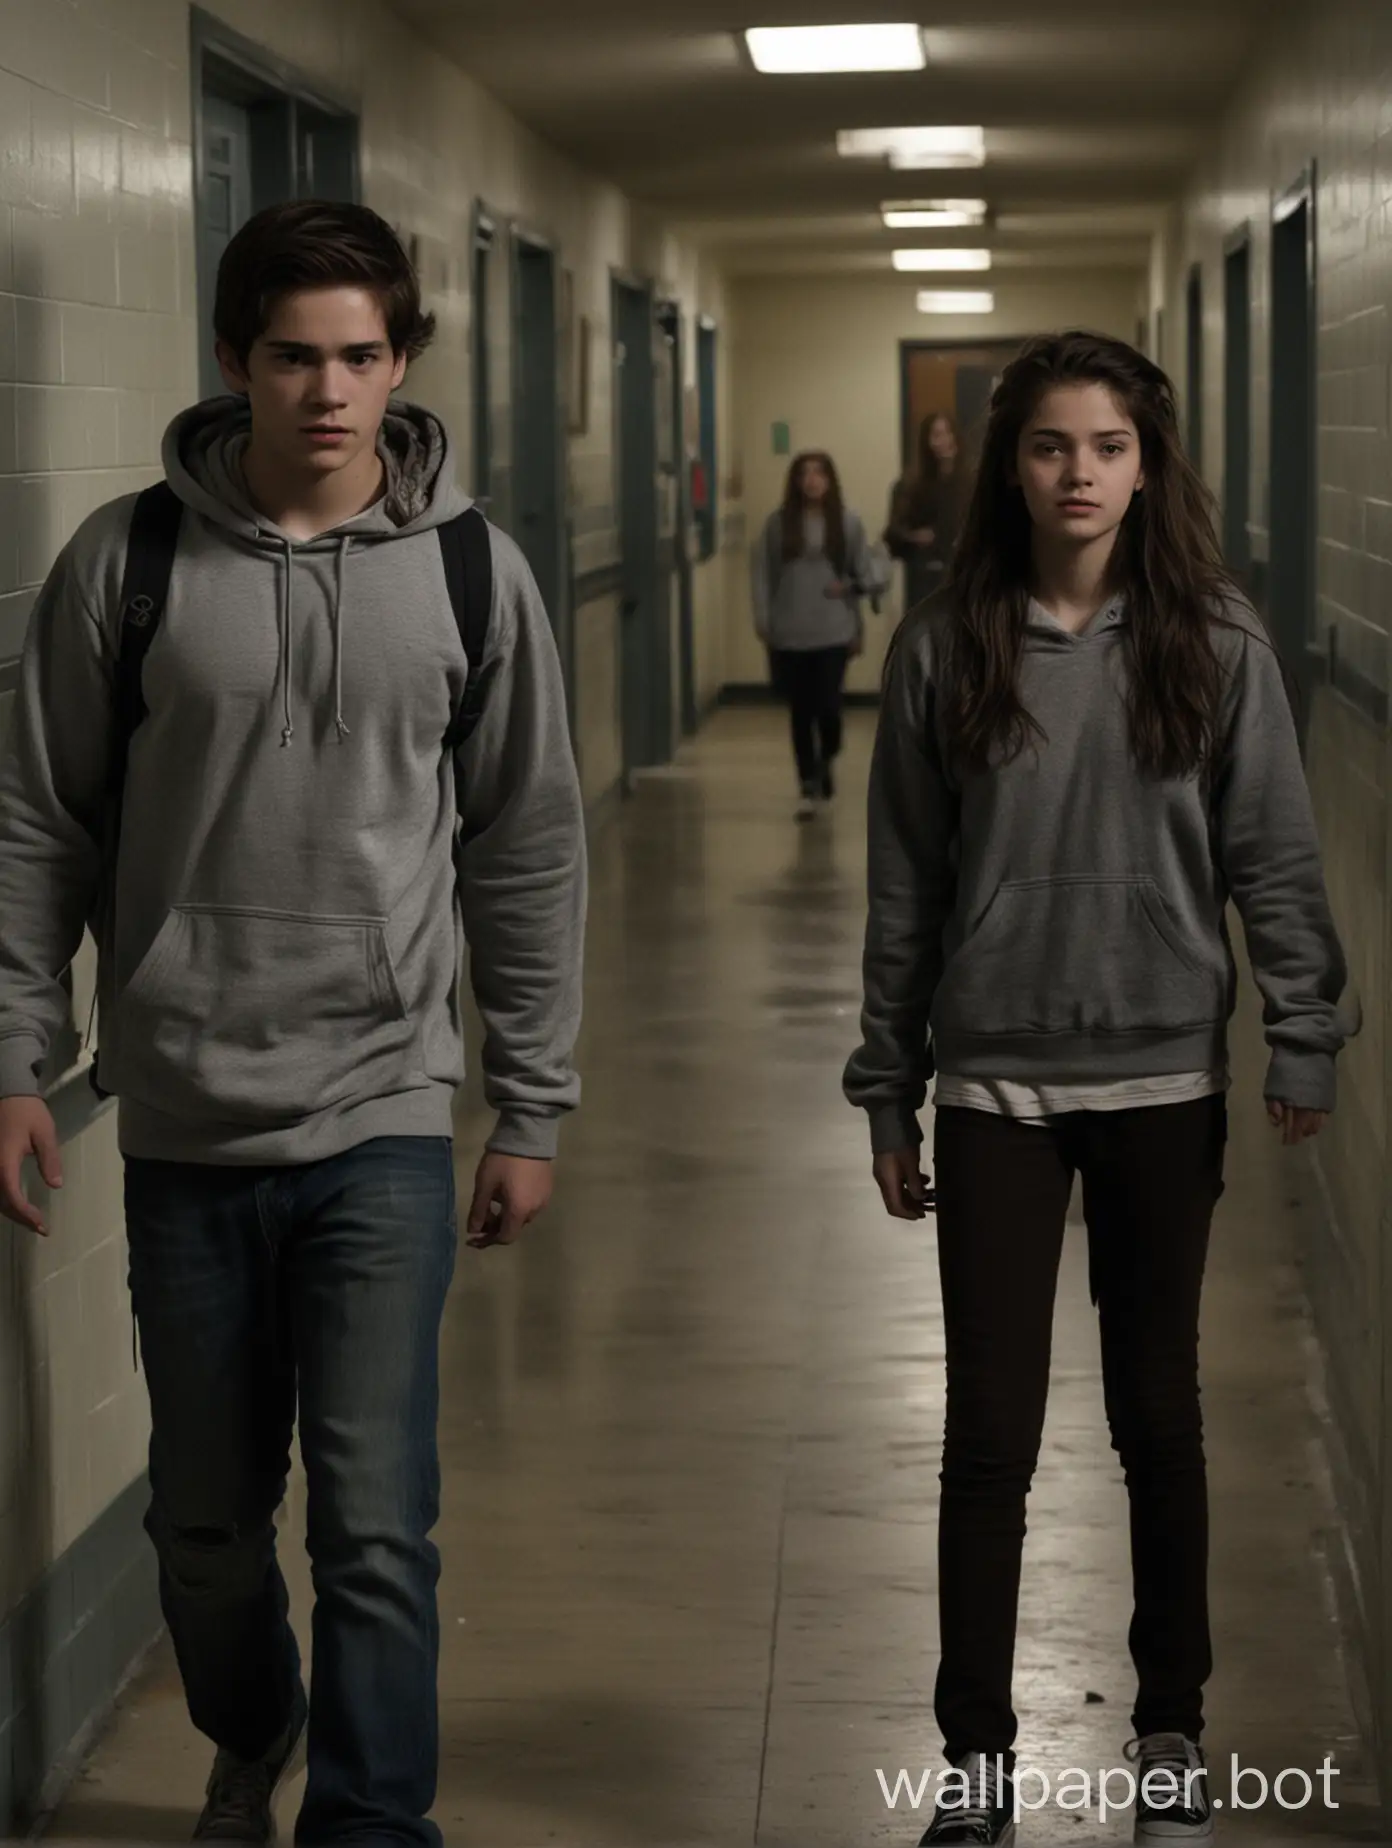 Teenagers-in-Dark-School-Corridors-Young-Boy-in-Gray-Hoodie-and-Girl-in-School-Uniform